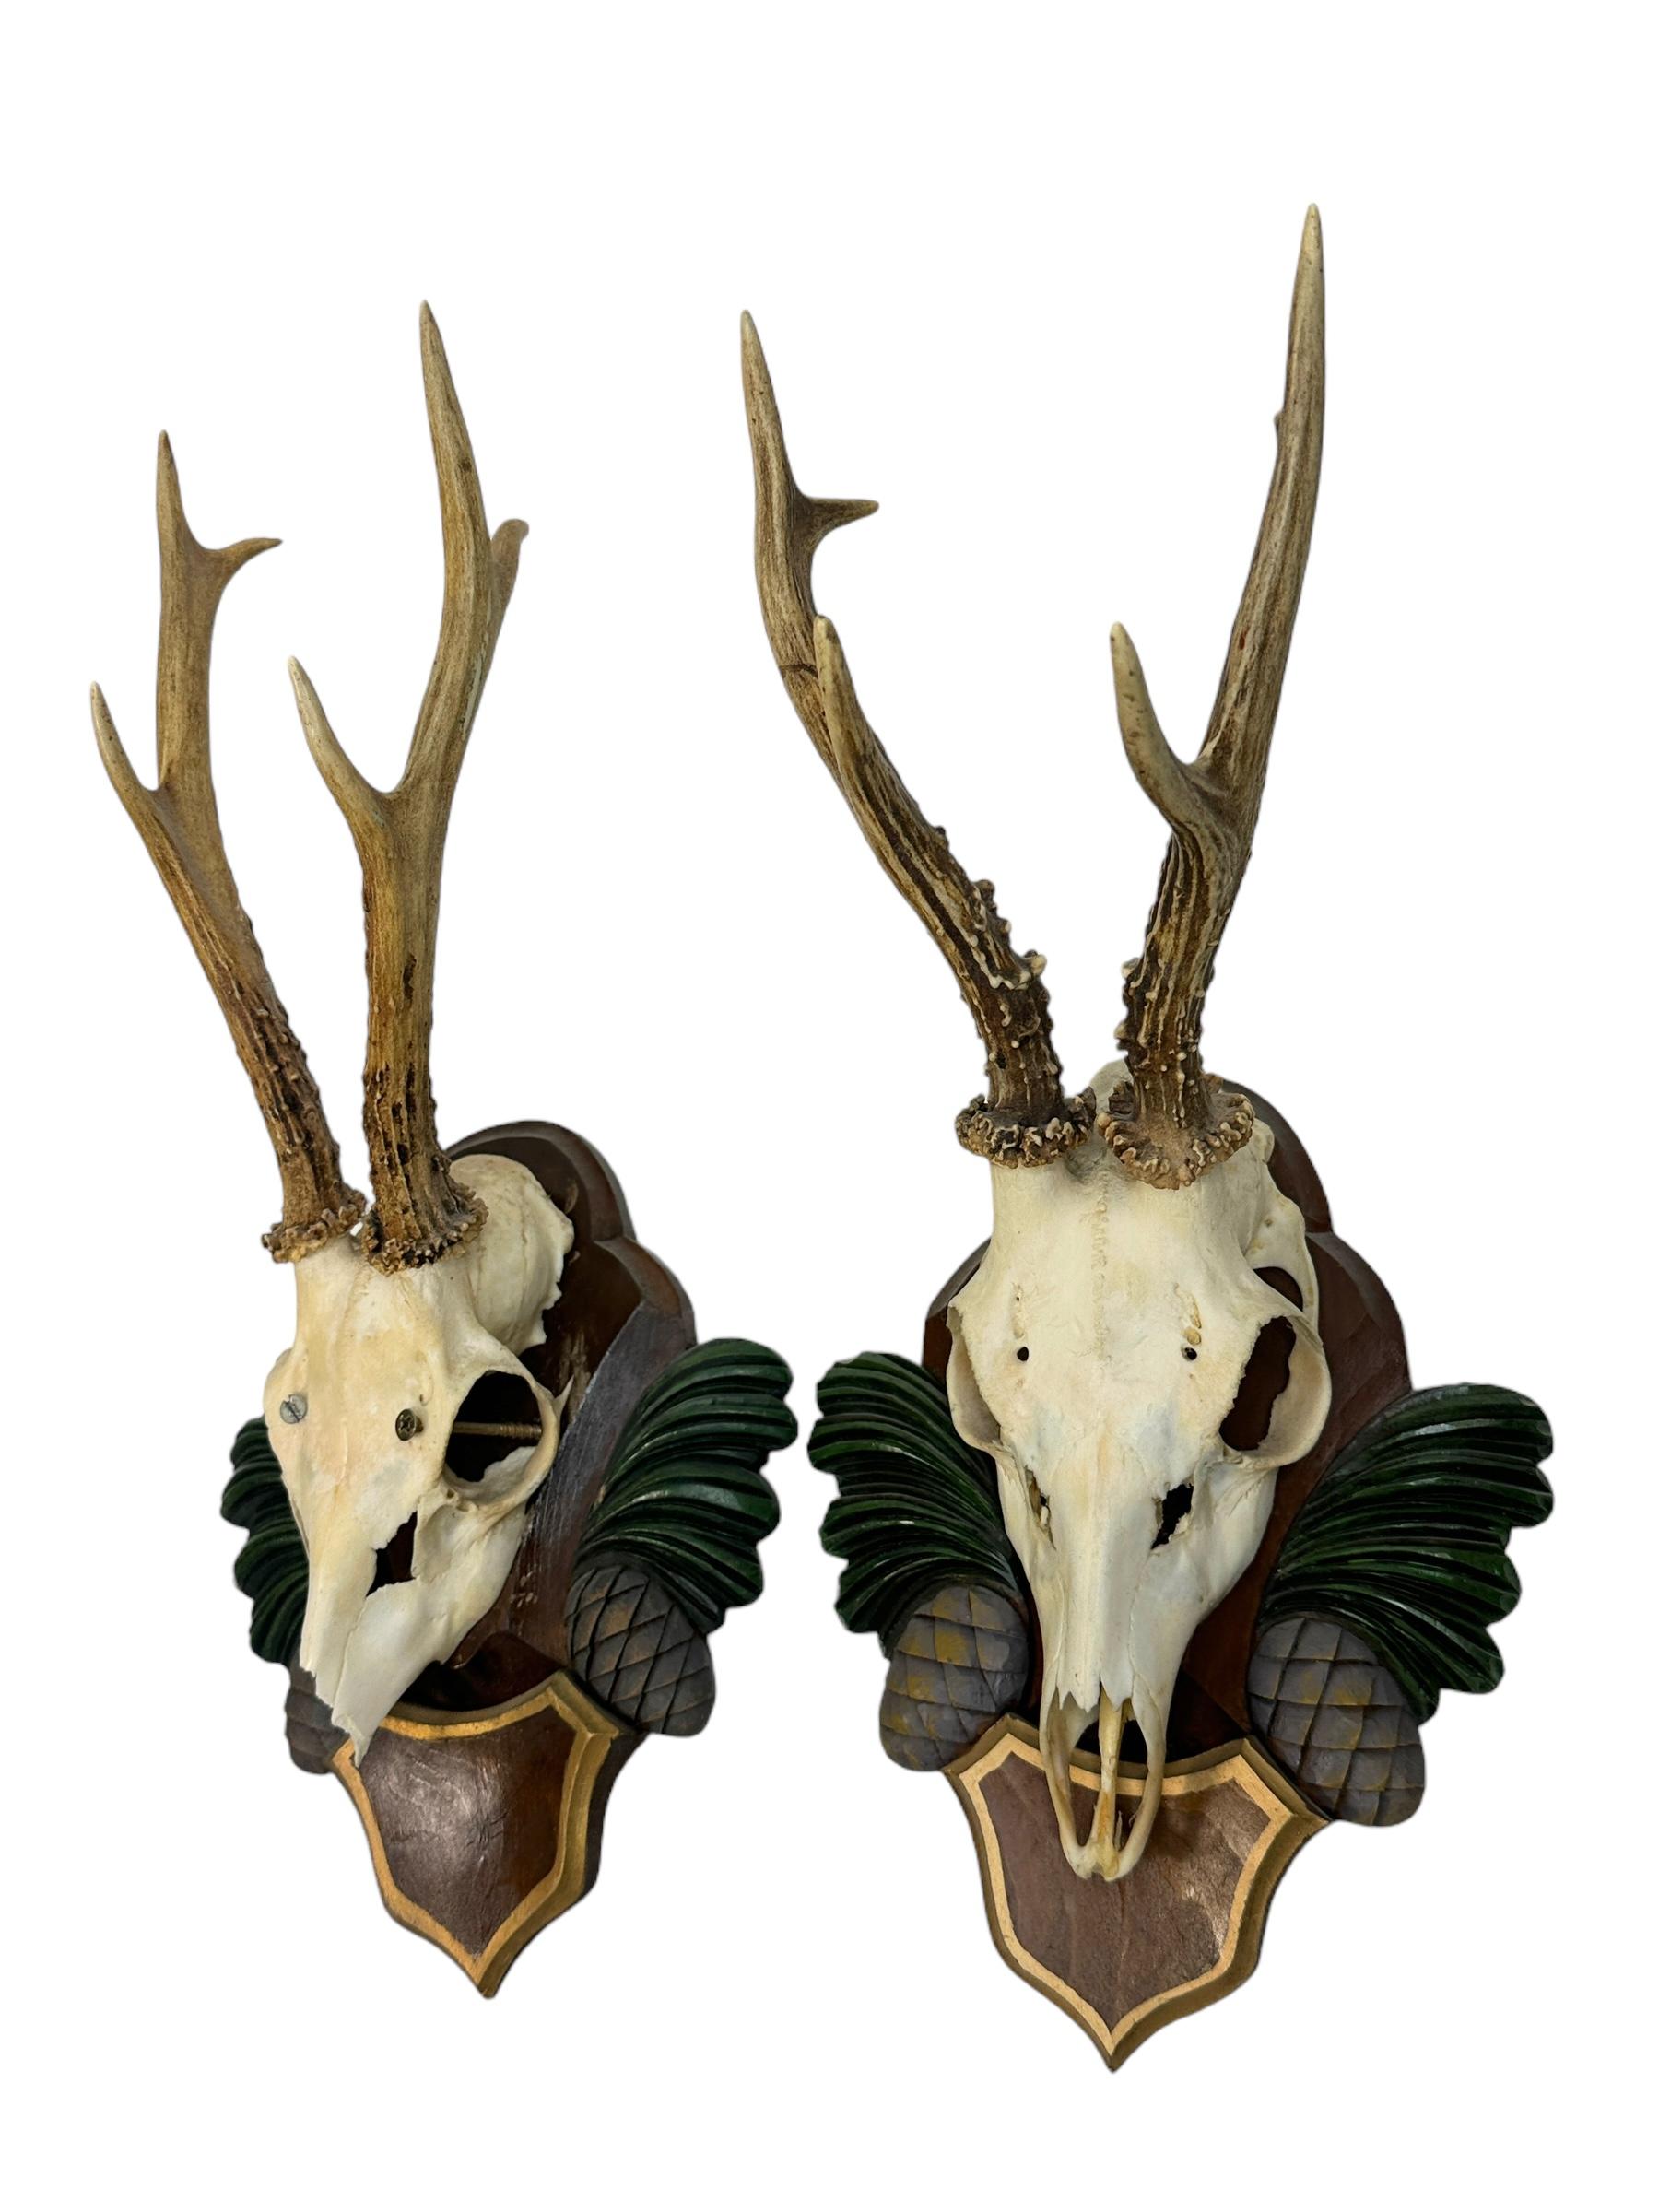 Hand-Carved Two Deer Antler Mount Trophy Black Forest Carved Wood Plaque Austria Folk Art  For Sale